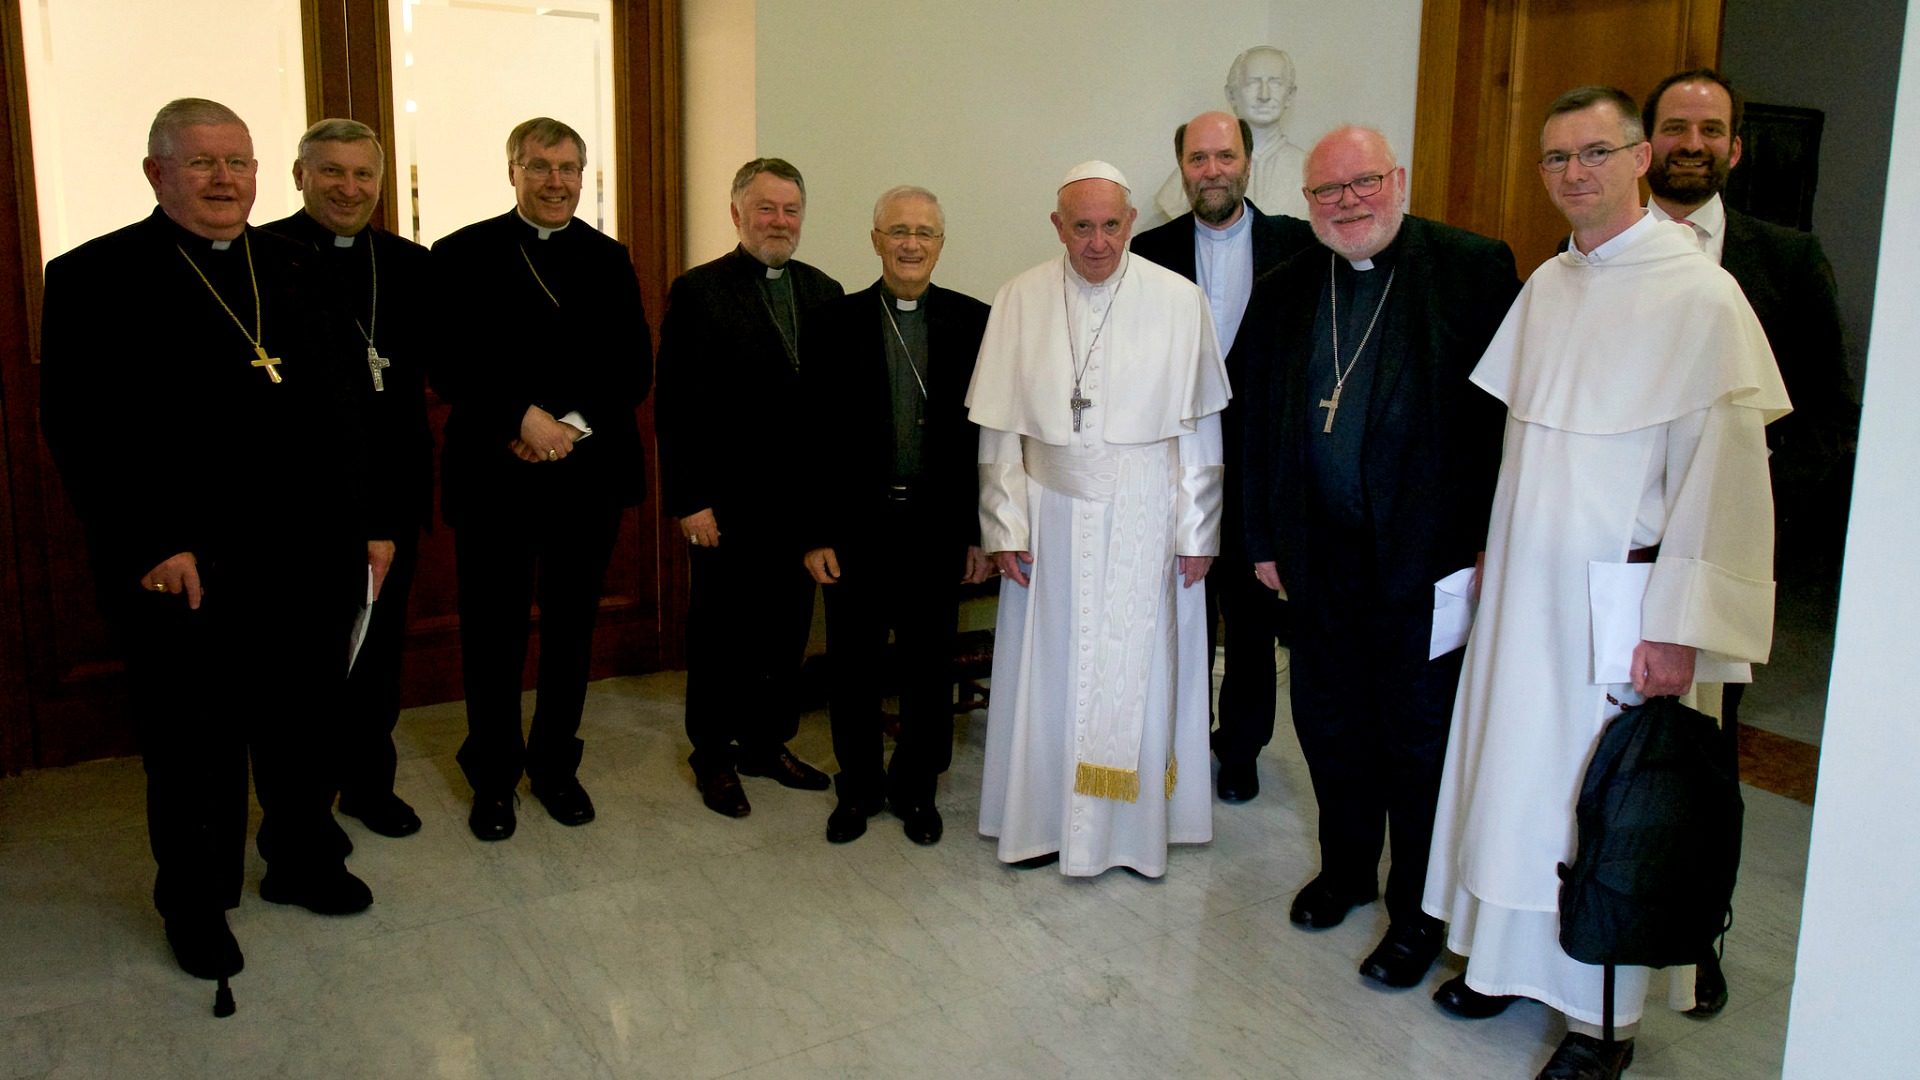 Le pape recevant les membres du comité permanent de la COMECE en vue de la rencontre "Rethinking Europe" d'octobre 2017. (Photo: Comece)